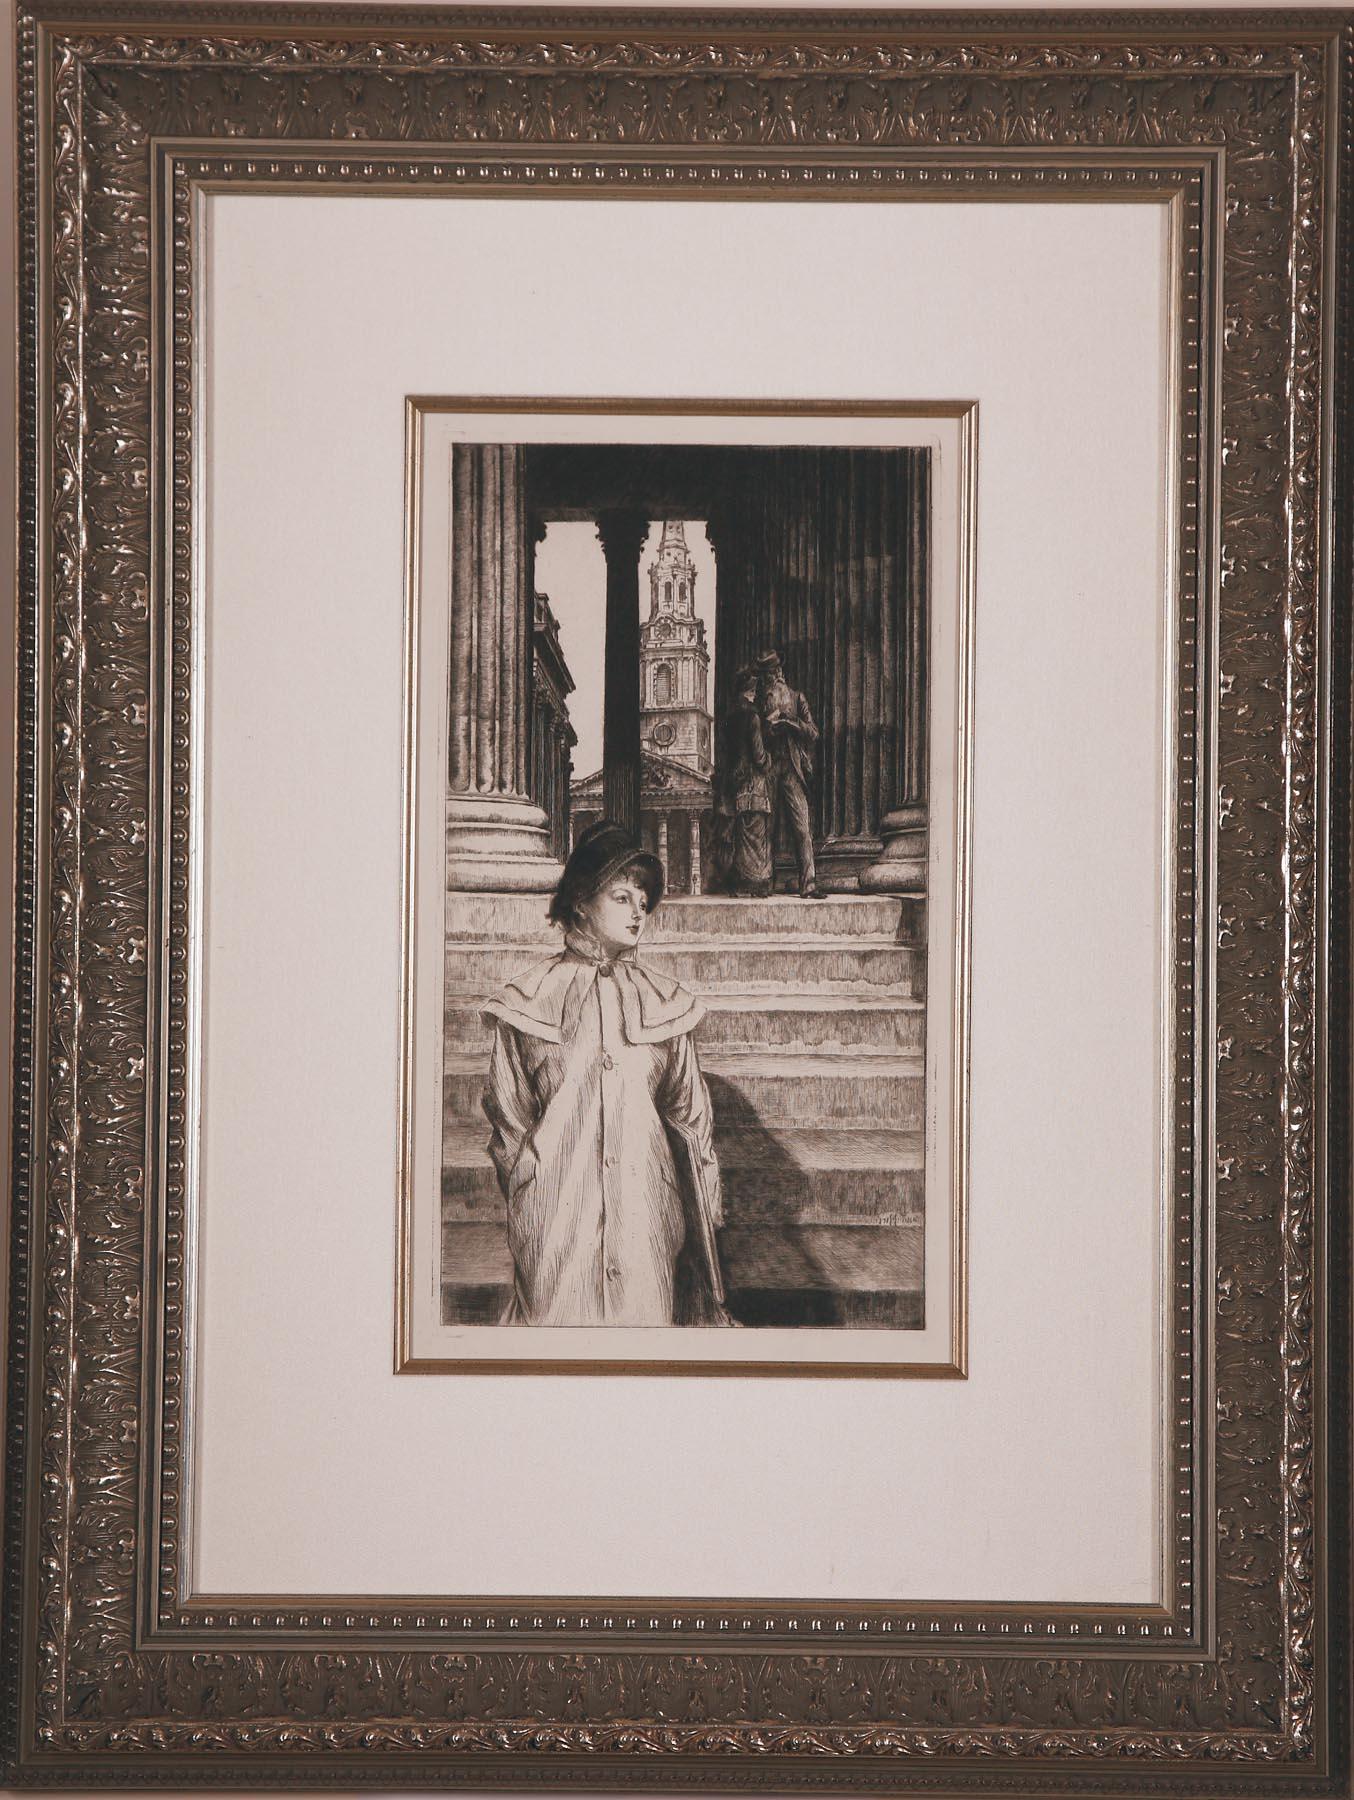 Le Portique de la Galerie Nationale a Londres by J.J. Tissot